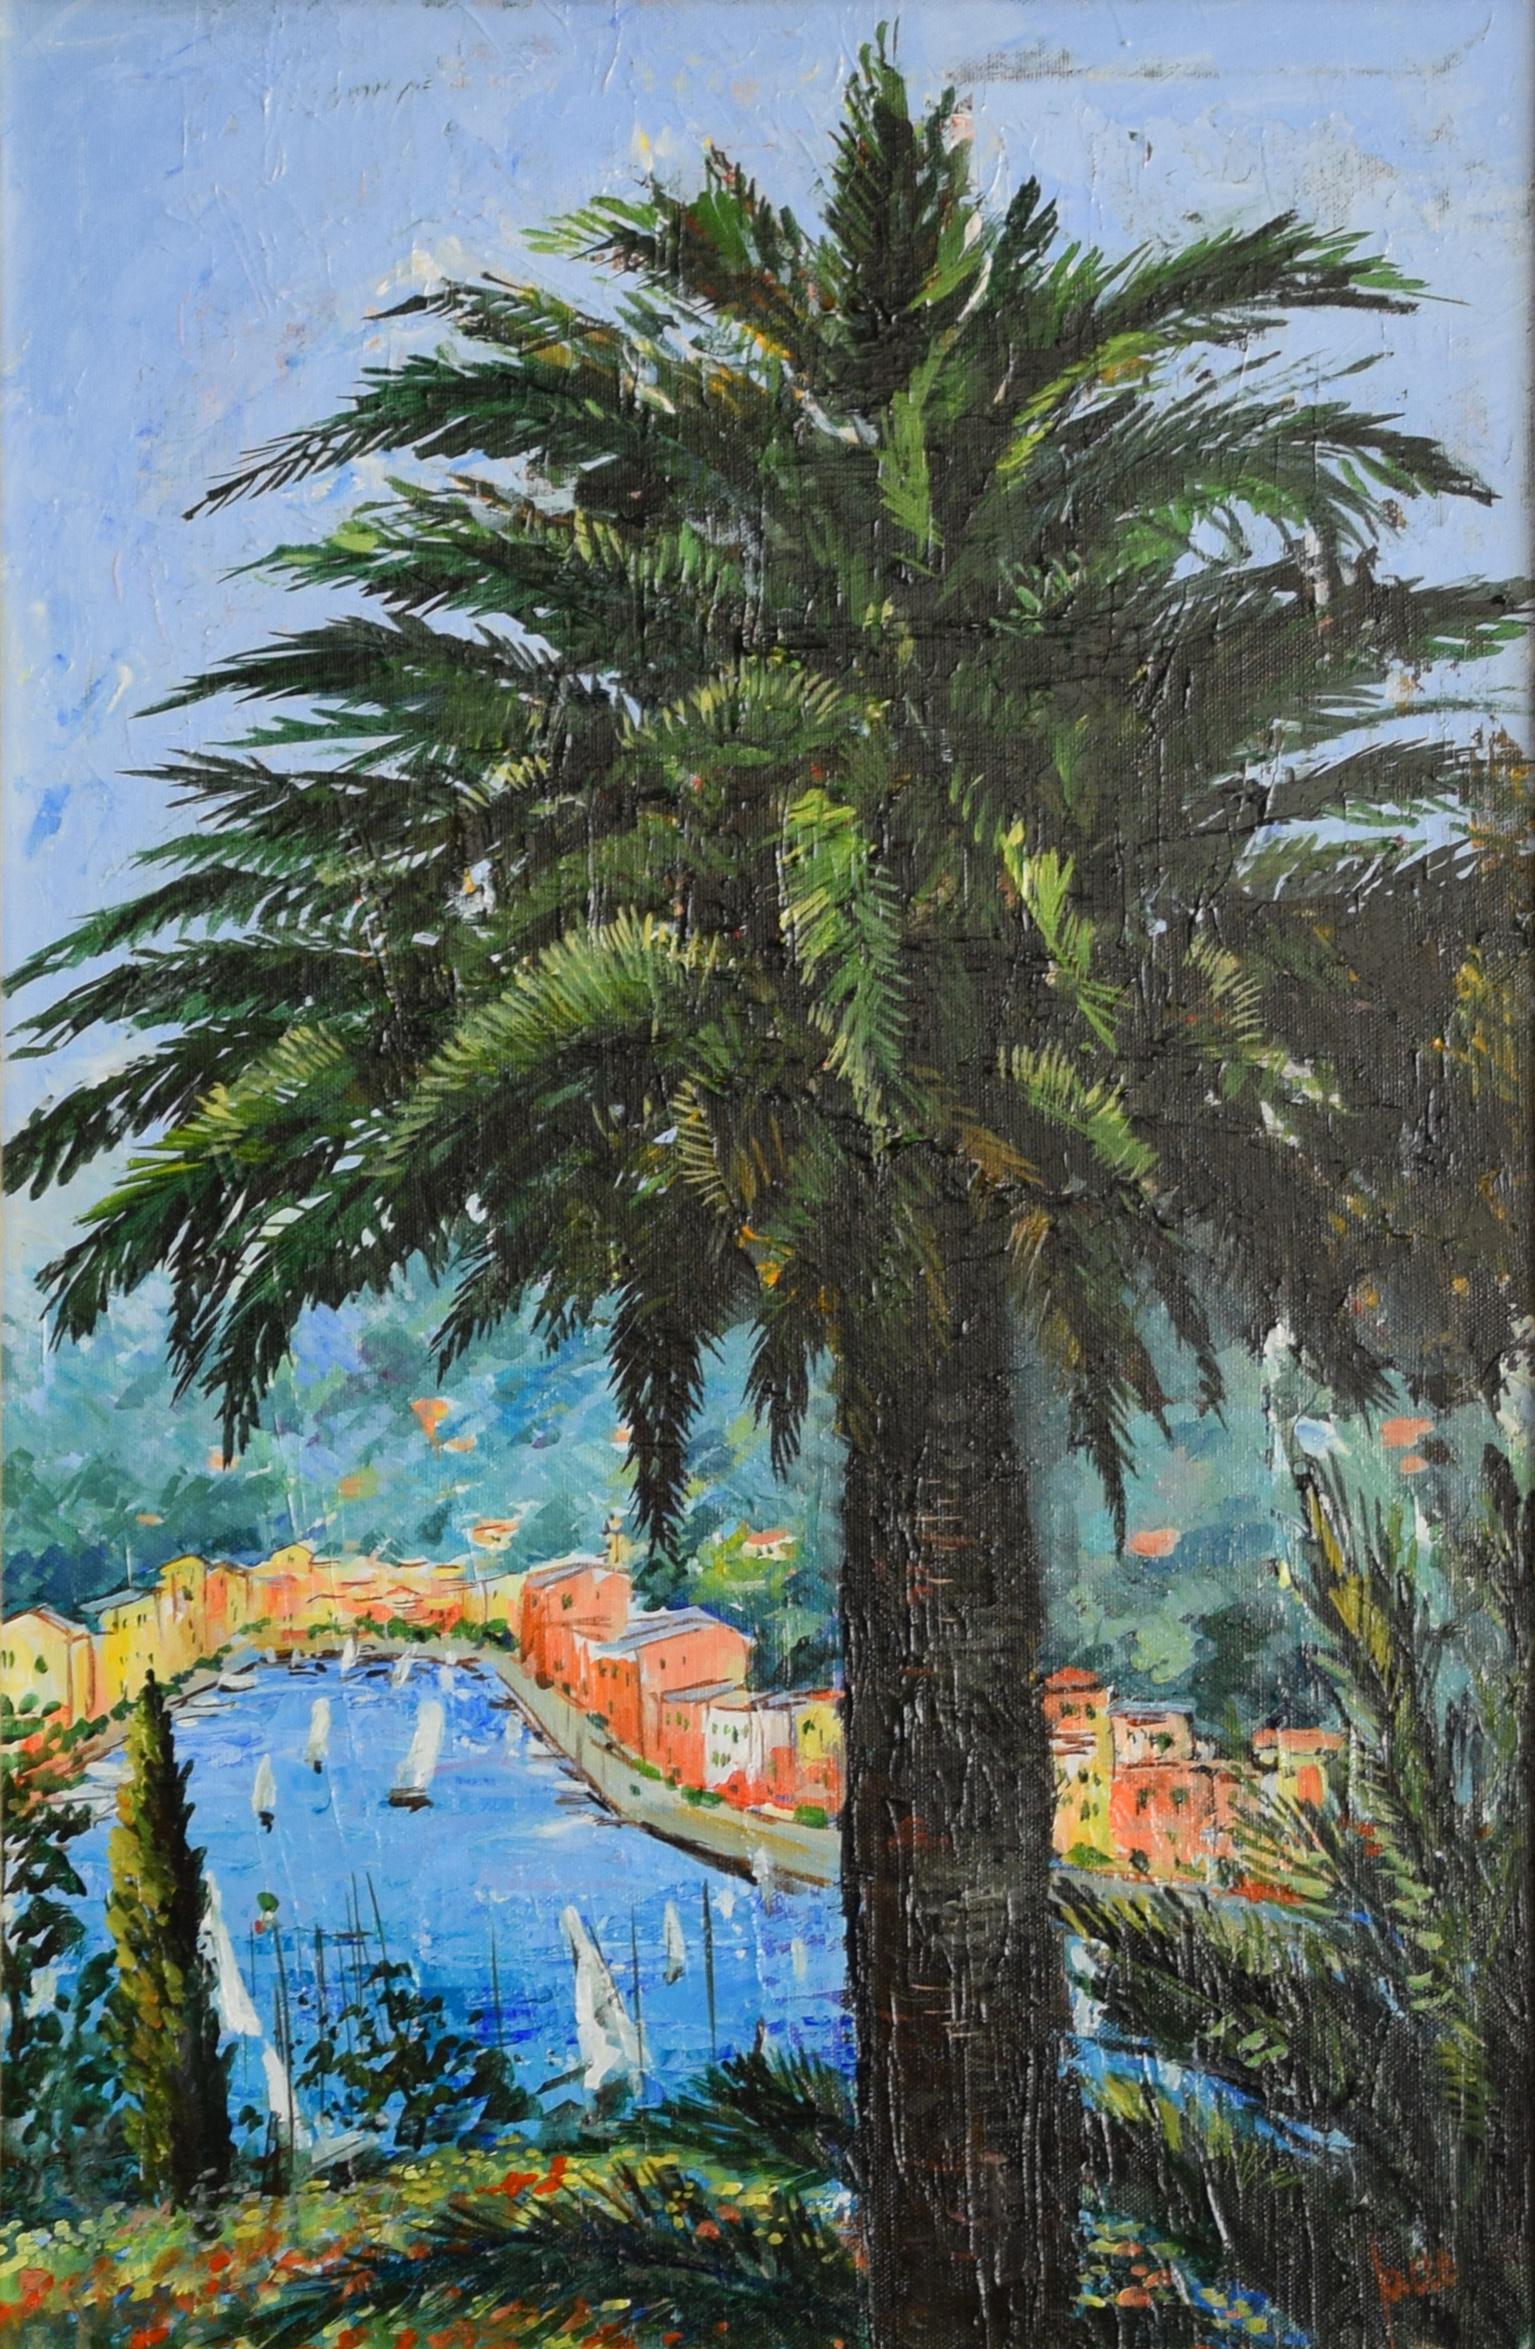 View of Portofino - Original Oil on Canvas by Luciano Sacco  3